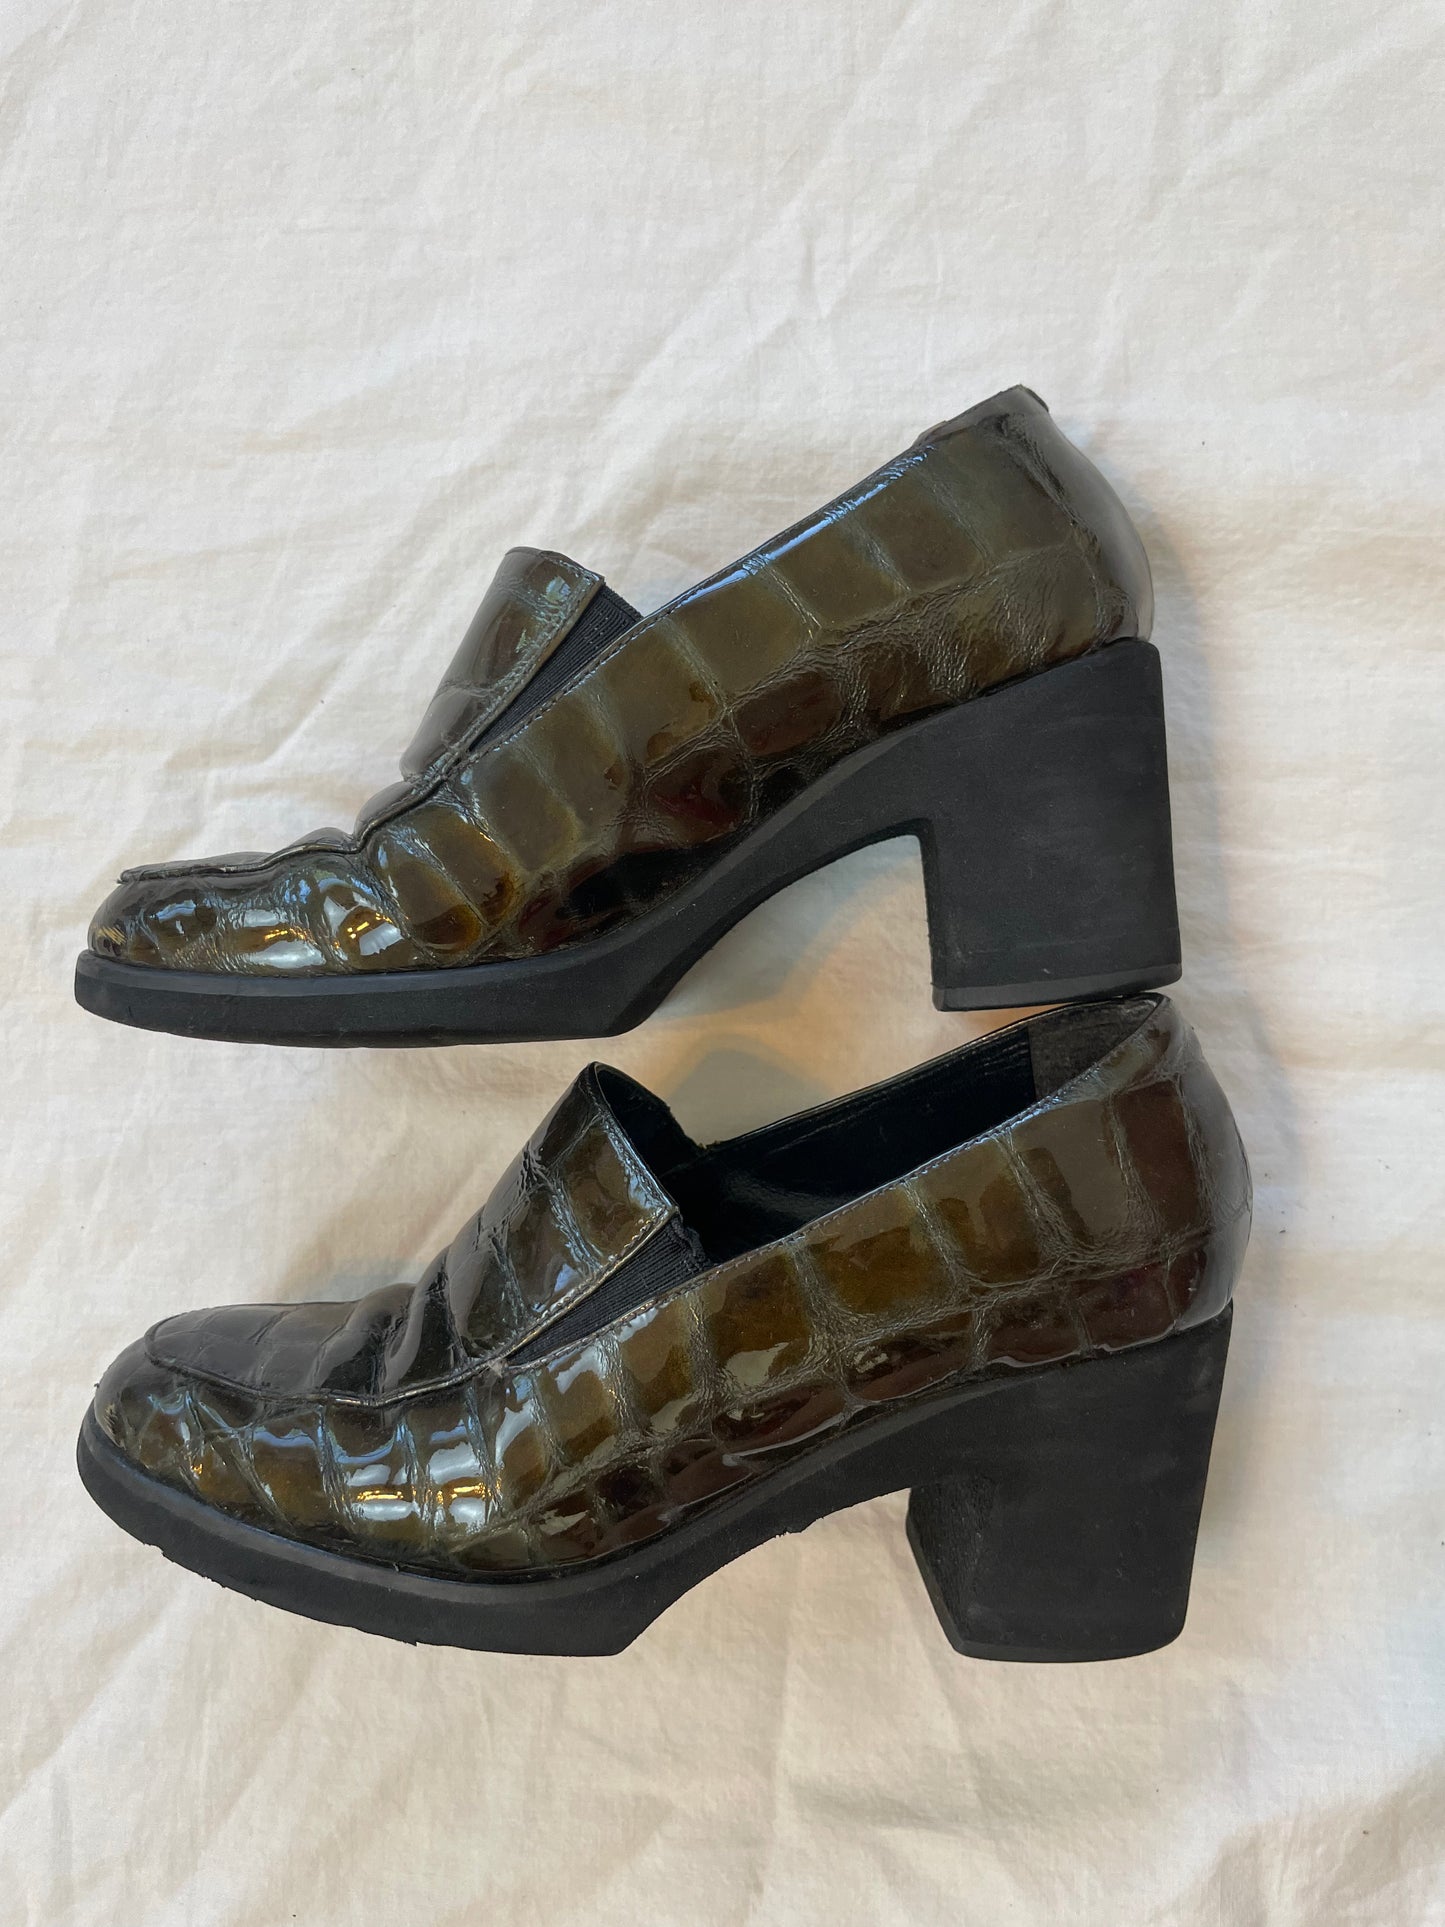 Loafer heels